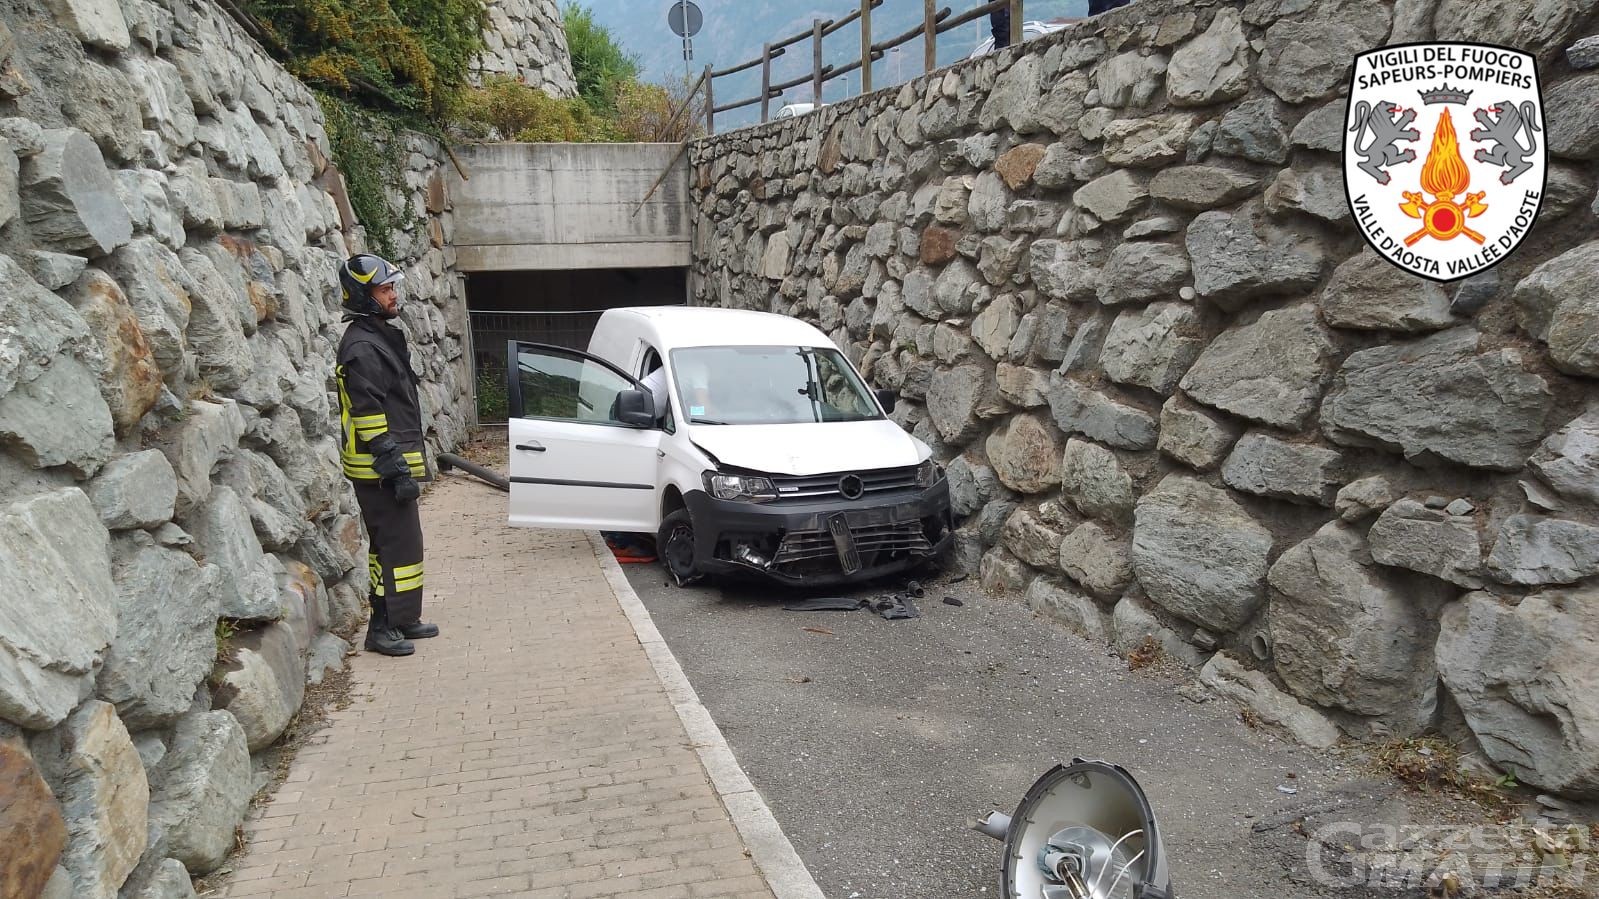 Incidenti stradali: interventi ad Aosta, Antey-Saint-André e Donnas, ma nessun ferito grave